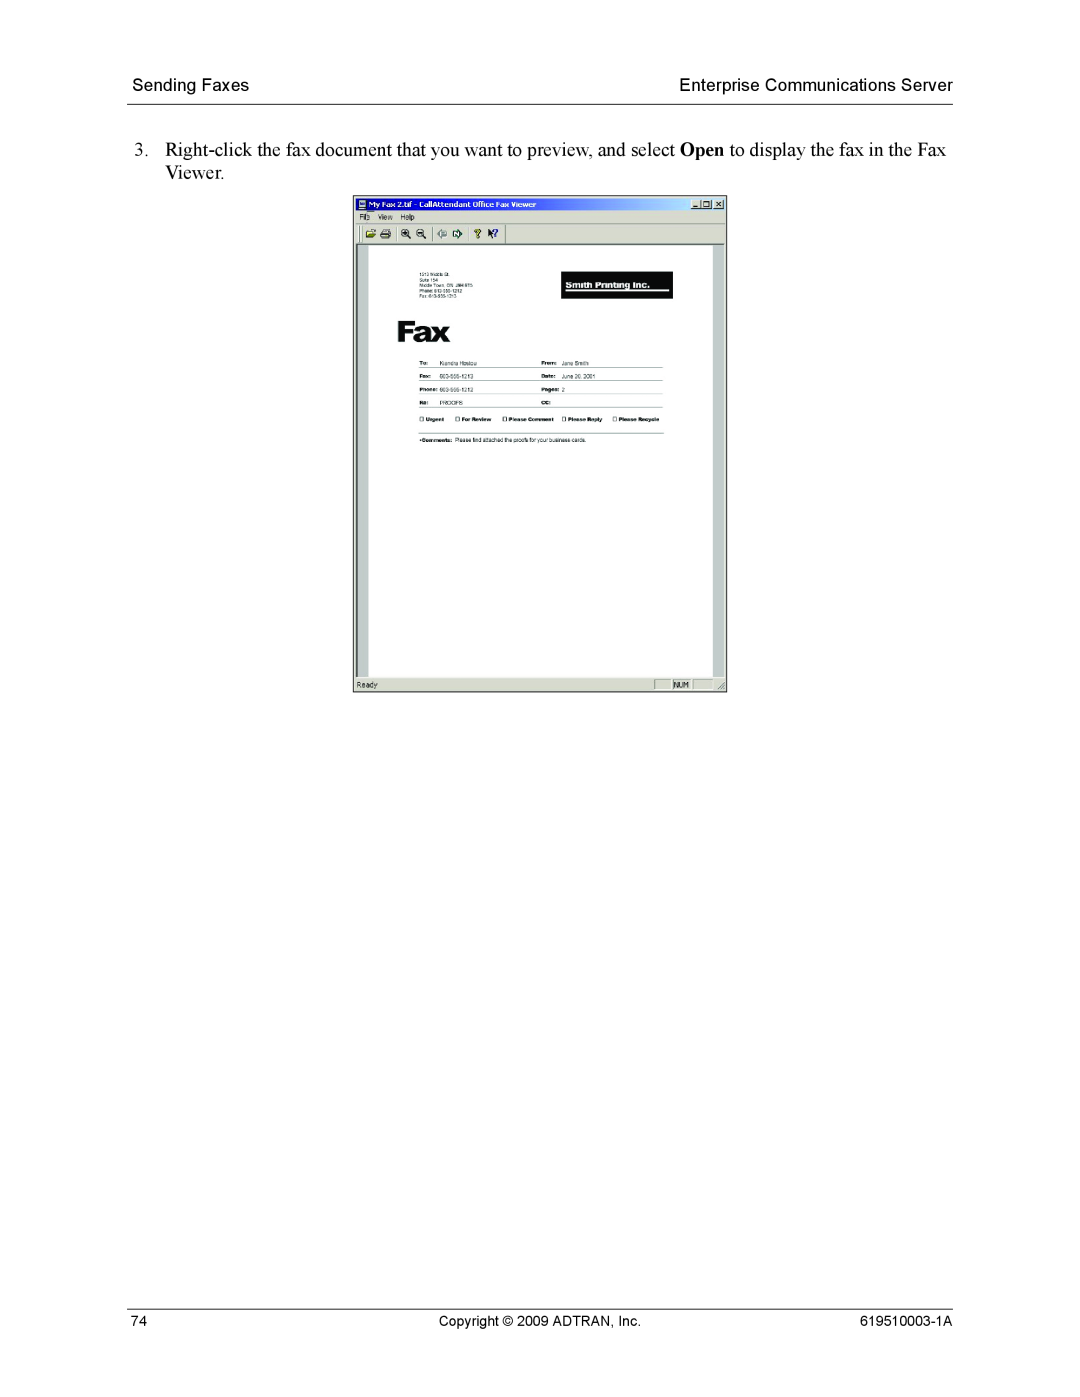 ADTRAN 619510003-1A manual Sending Faxes, Enterprise Communications Server, Copyright 2009 ADTRAN, Inc 